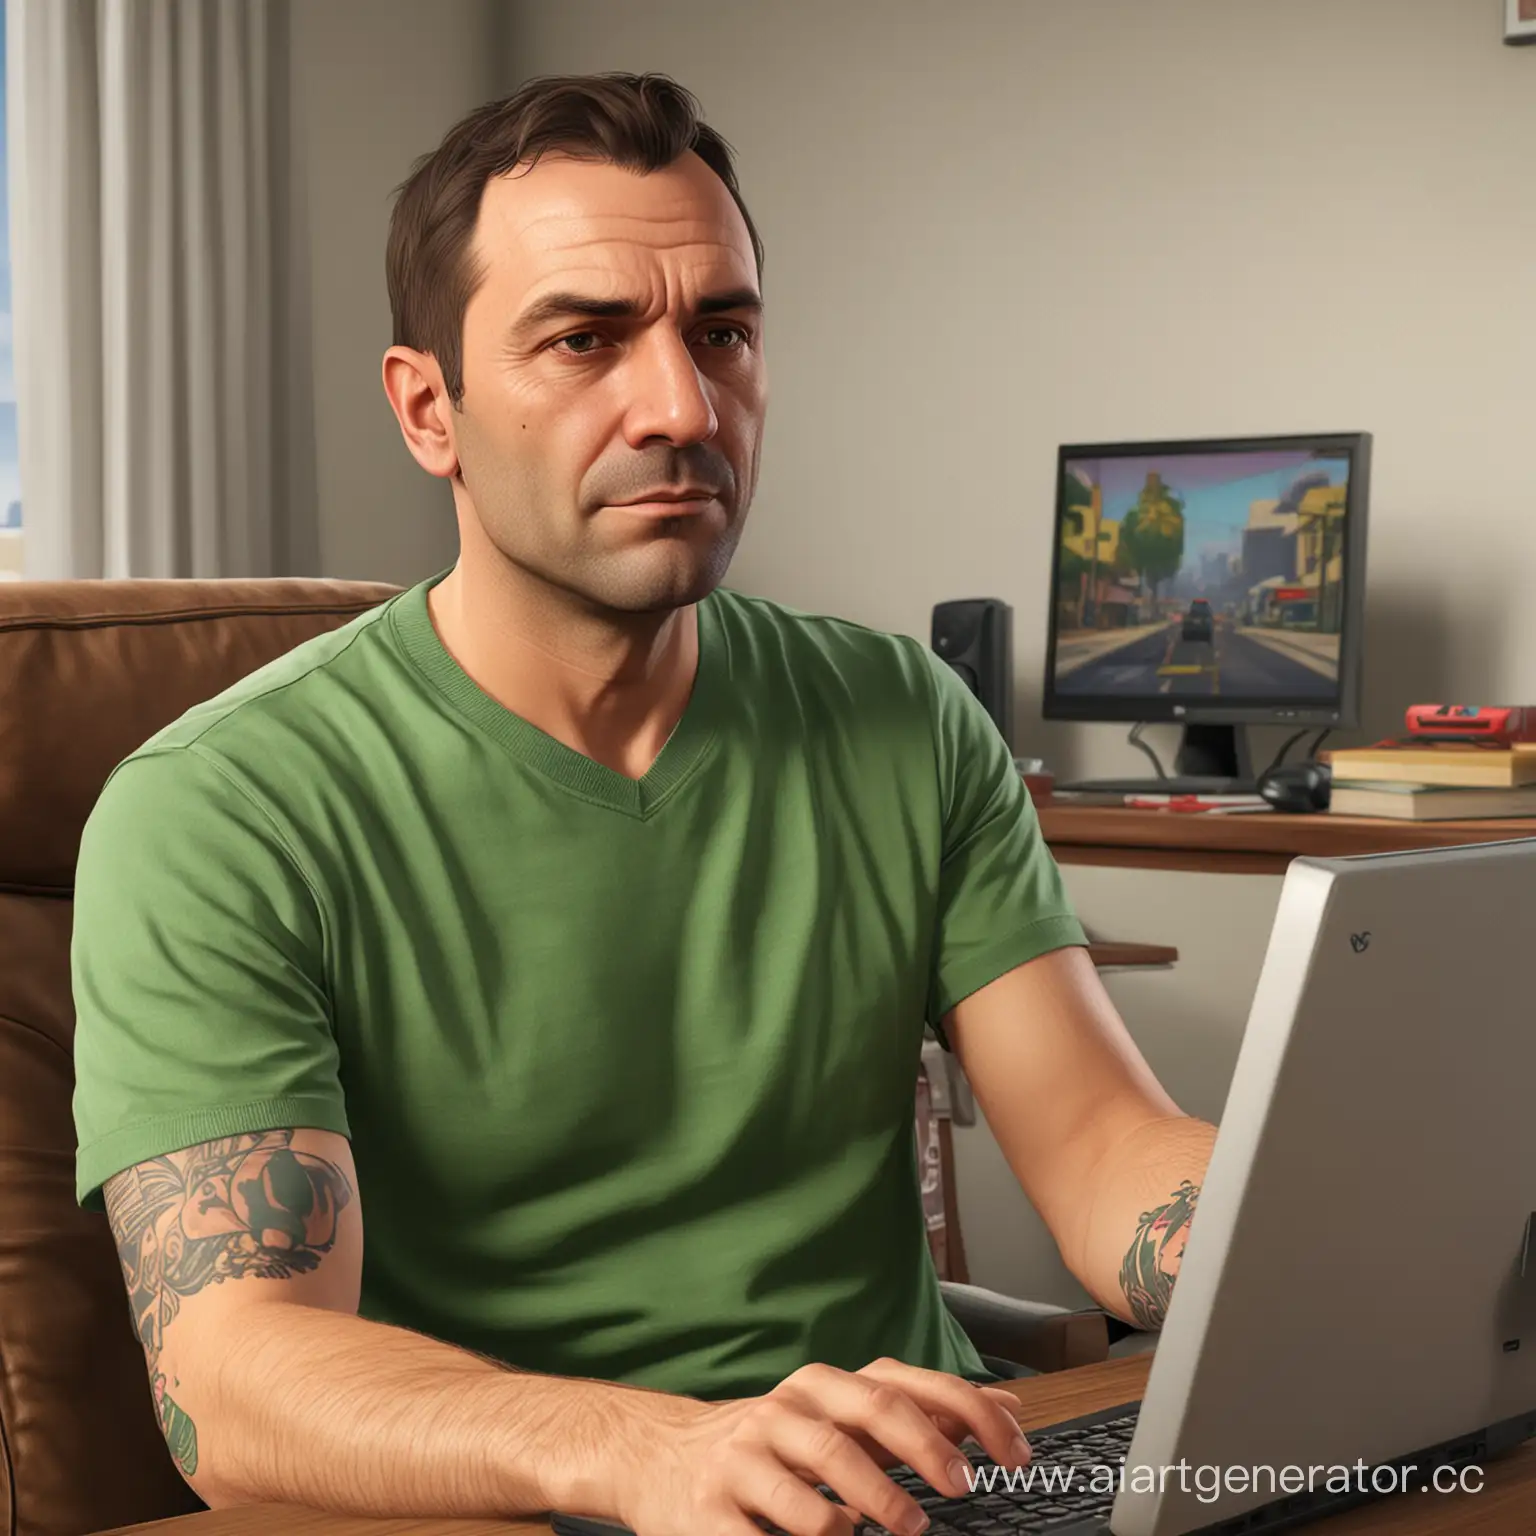 сорокалетний мужик сидит за компьютером и играет в GTA 5